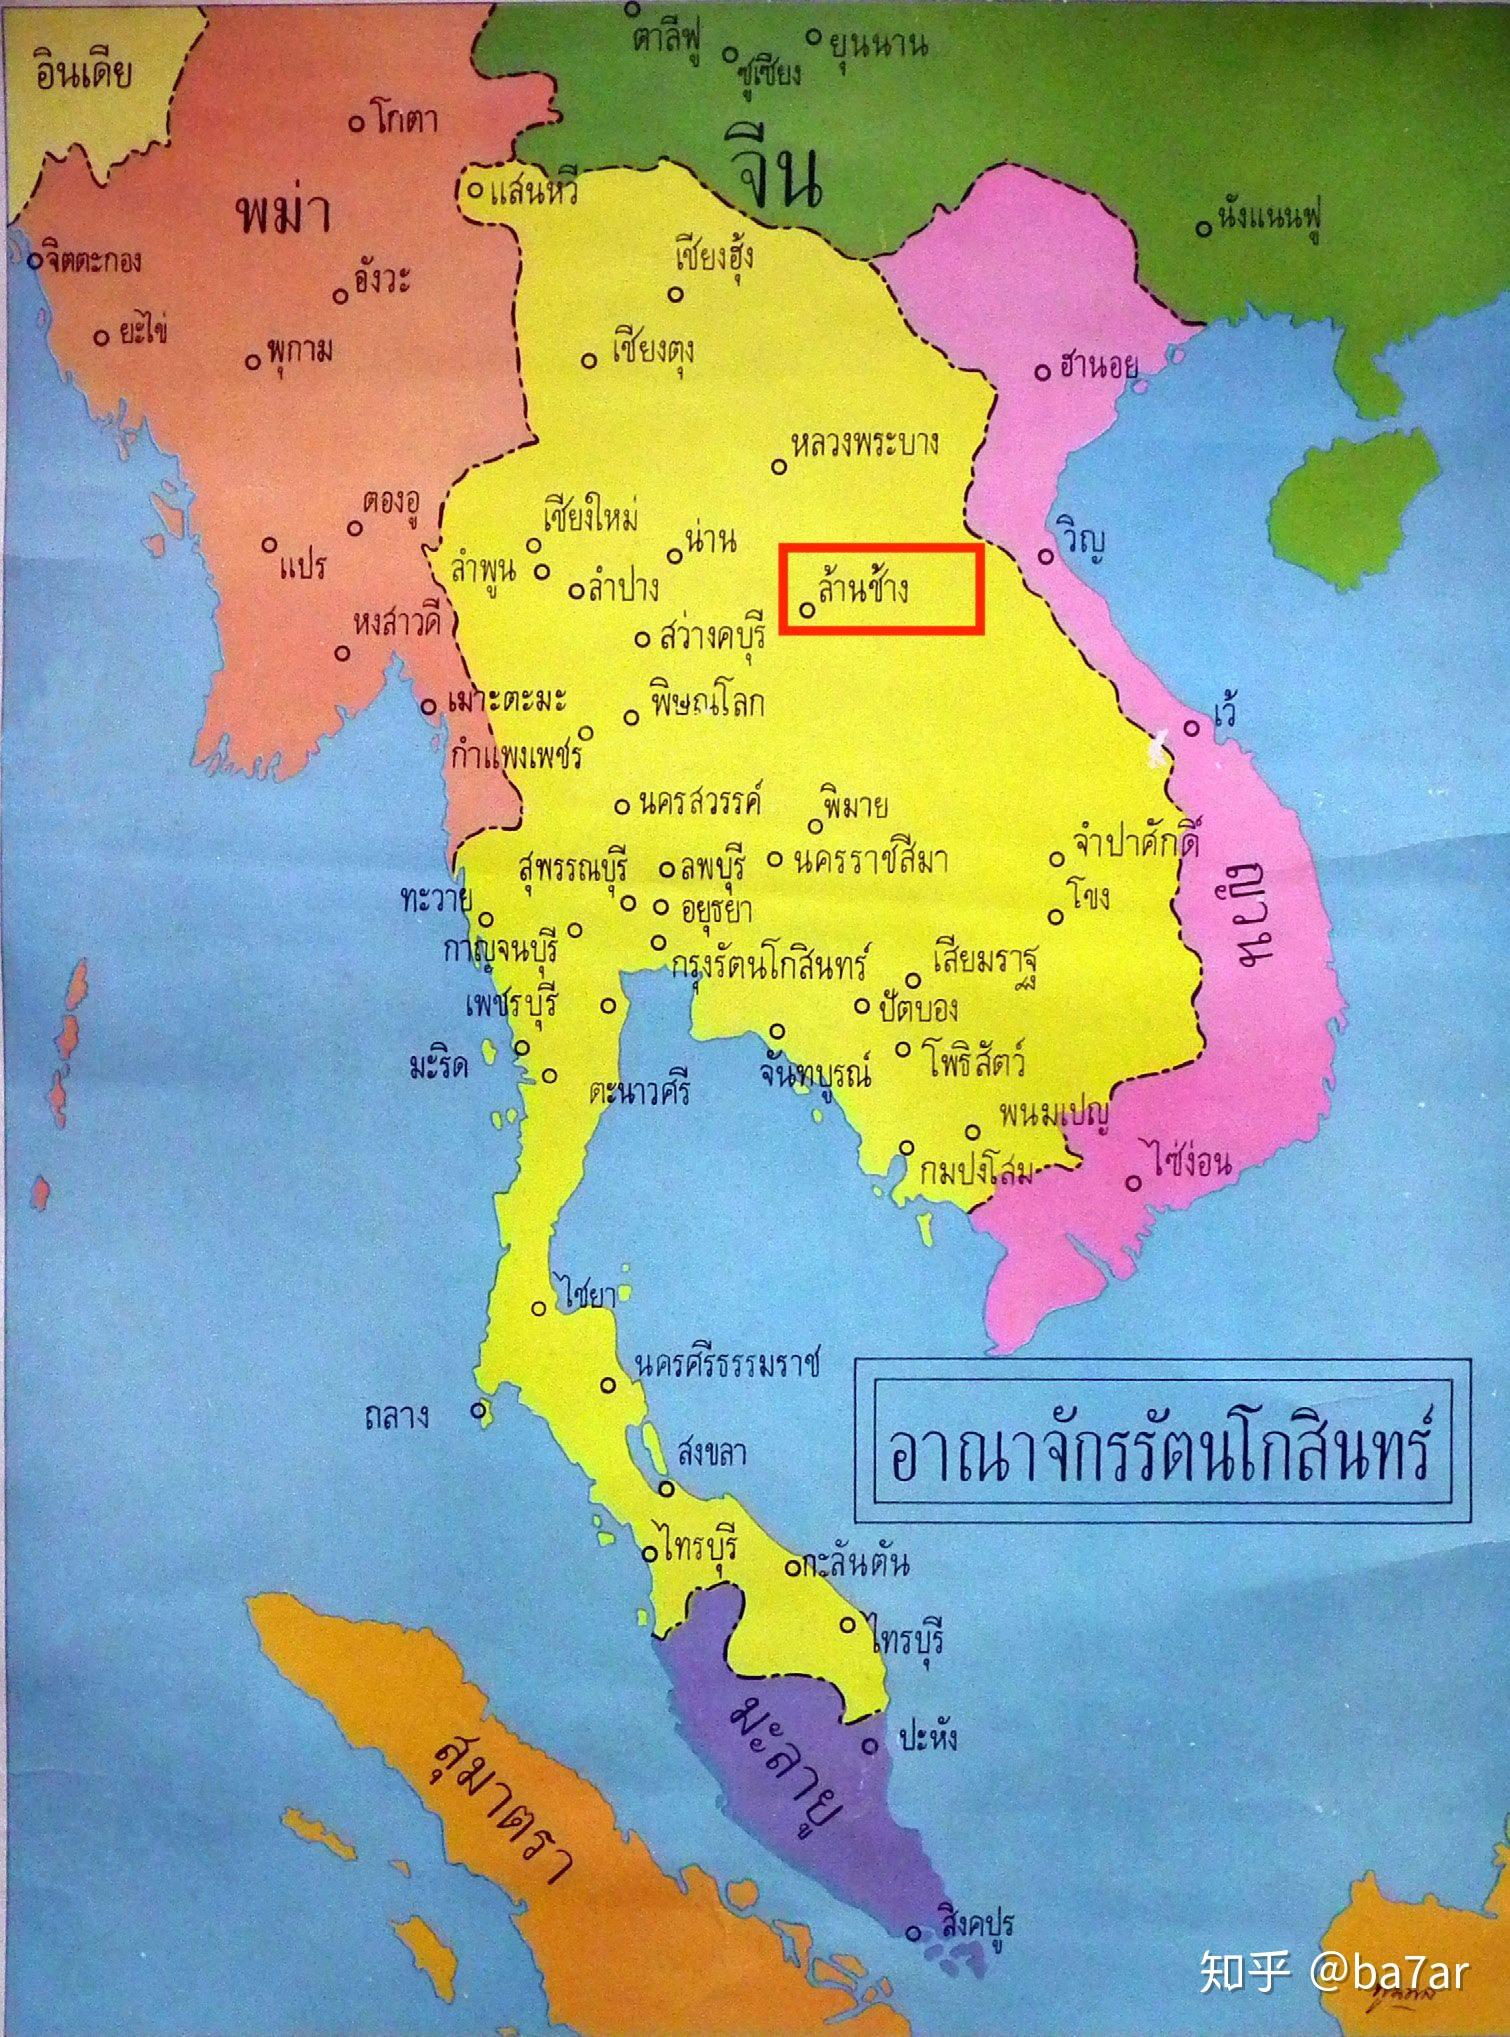 老挝首都叫万象 或是越南人的翻译 